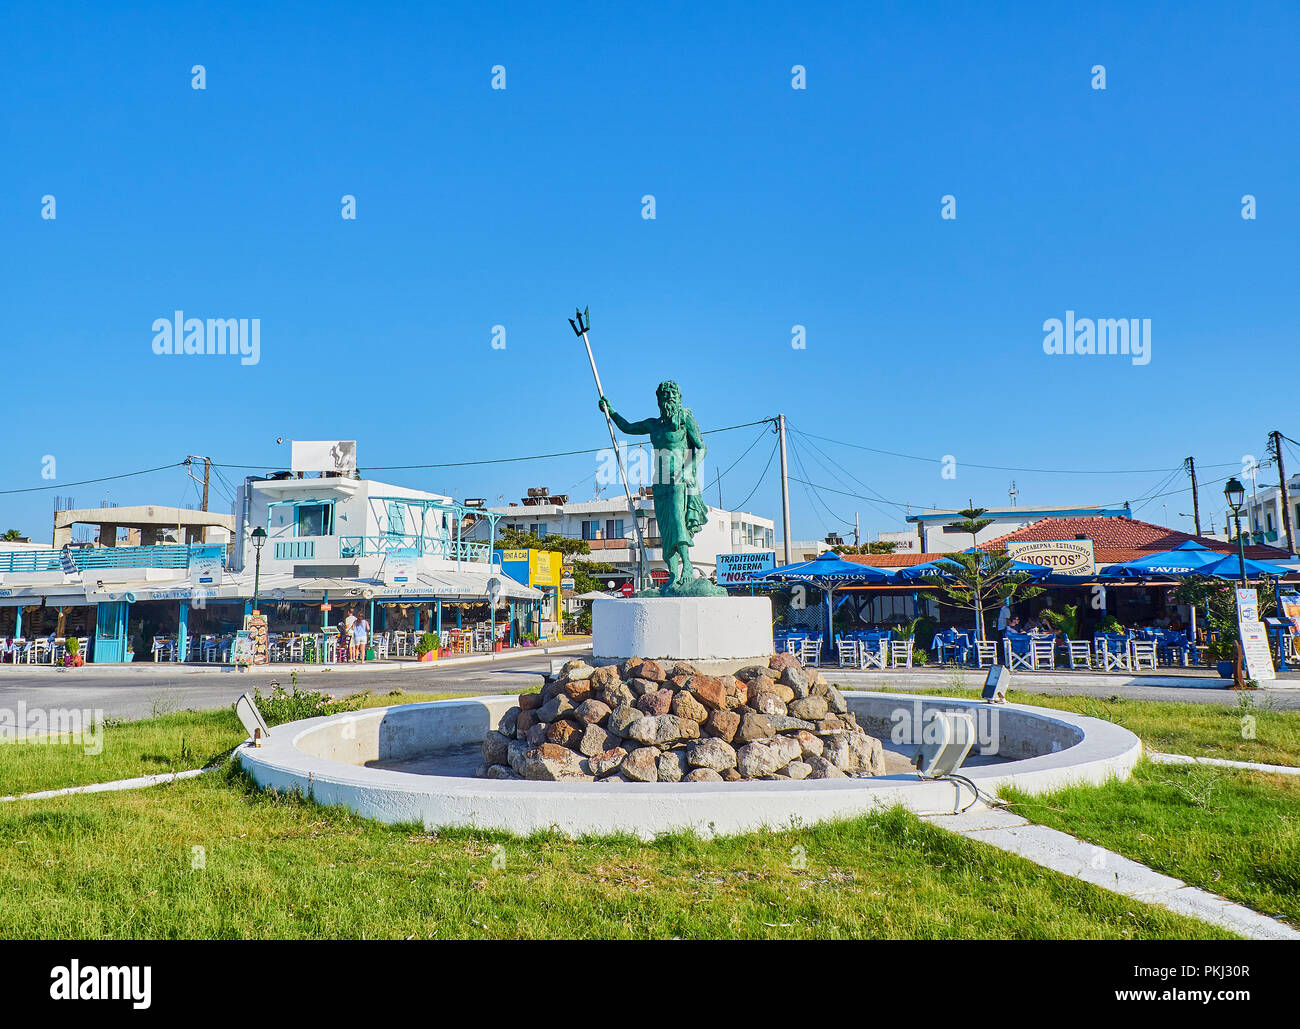 Statue de Neptune dans le village de Mastichari. L'île grecque de Kos, Grèce, région sud de la Mer Egée. Banque D'Images